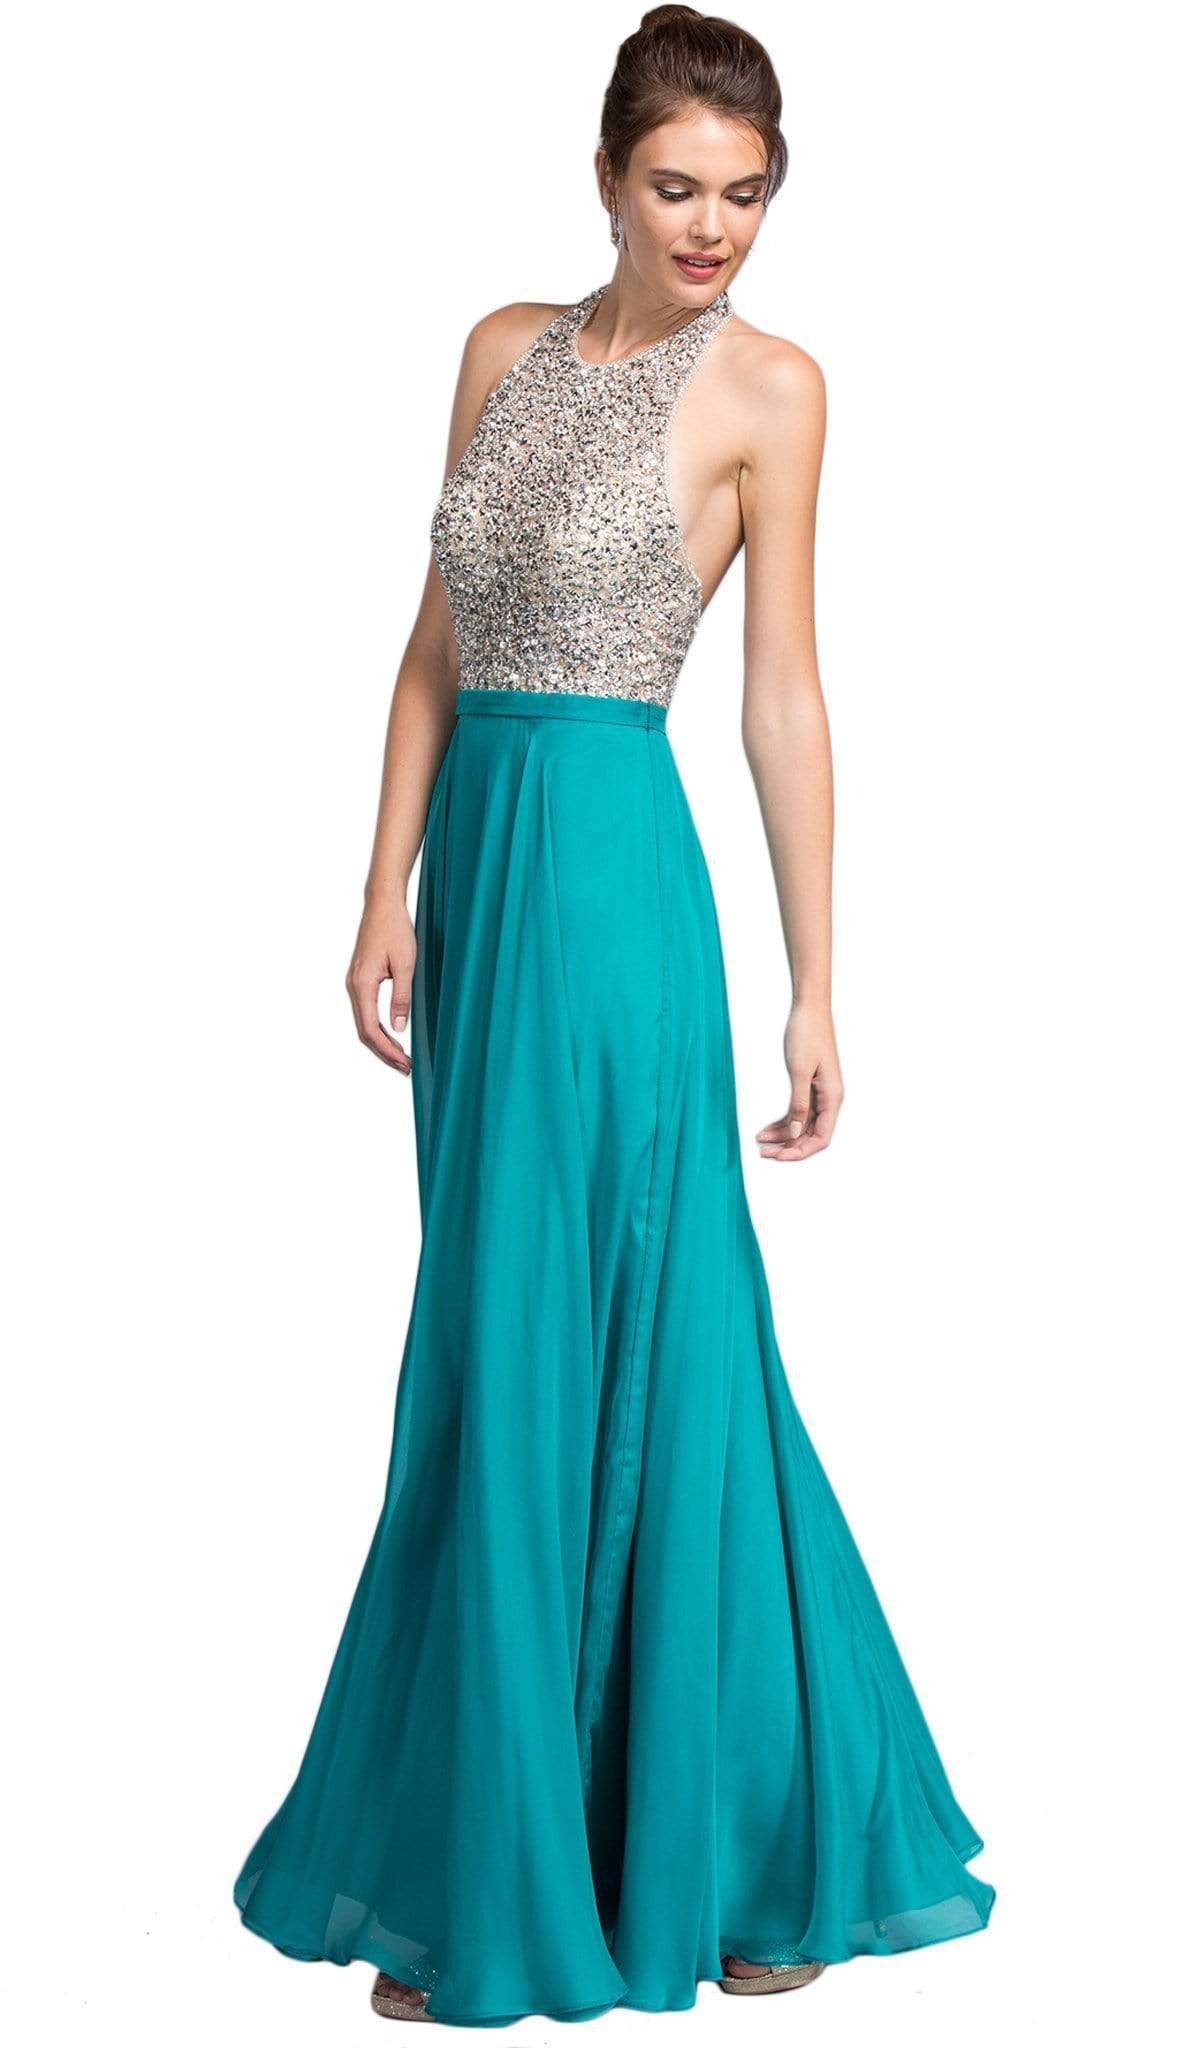 Image of Aspeed Design - Embellished Halter Neckline A-line Prom Dress